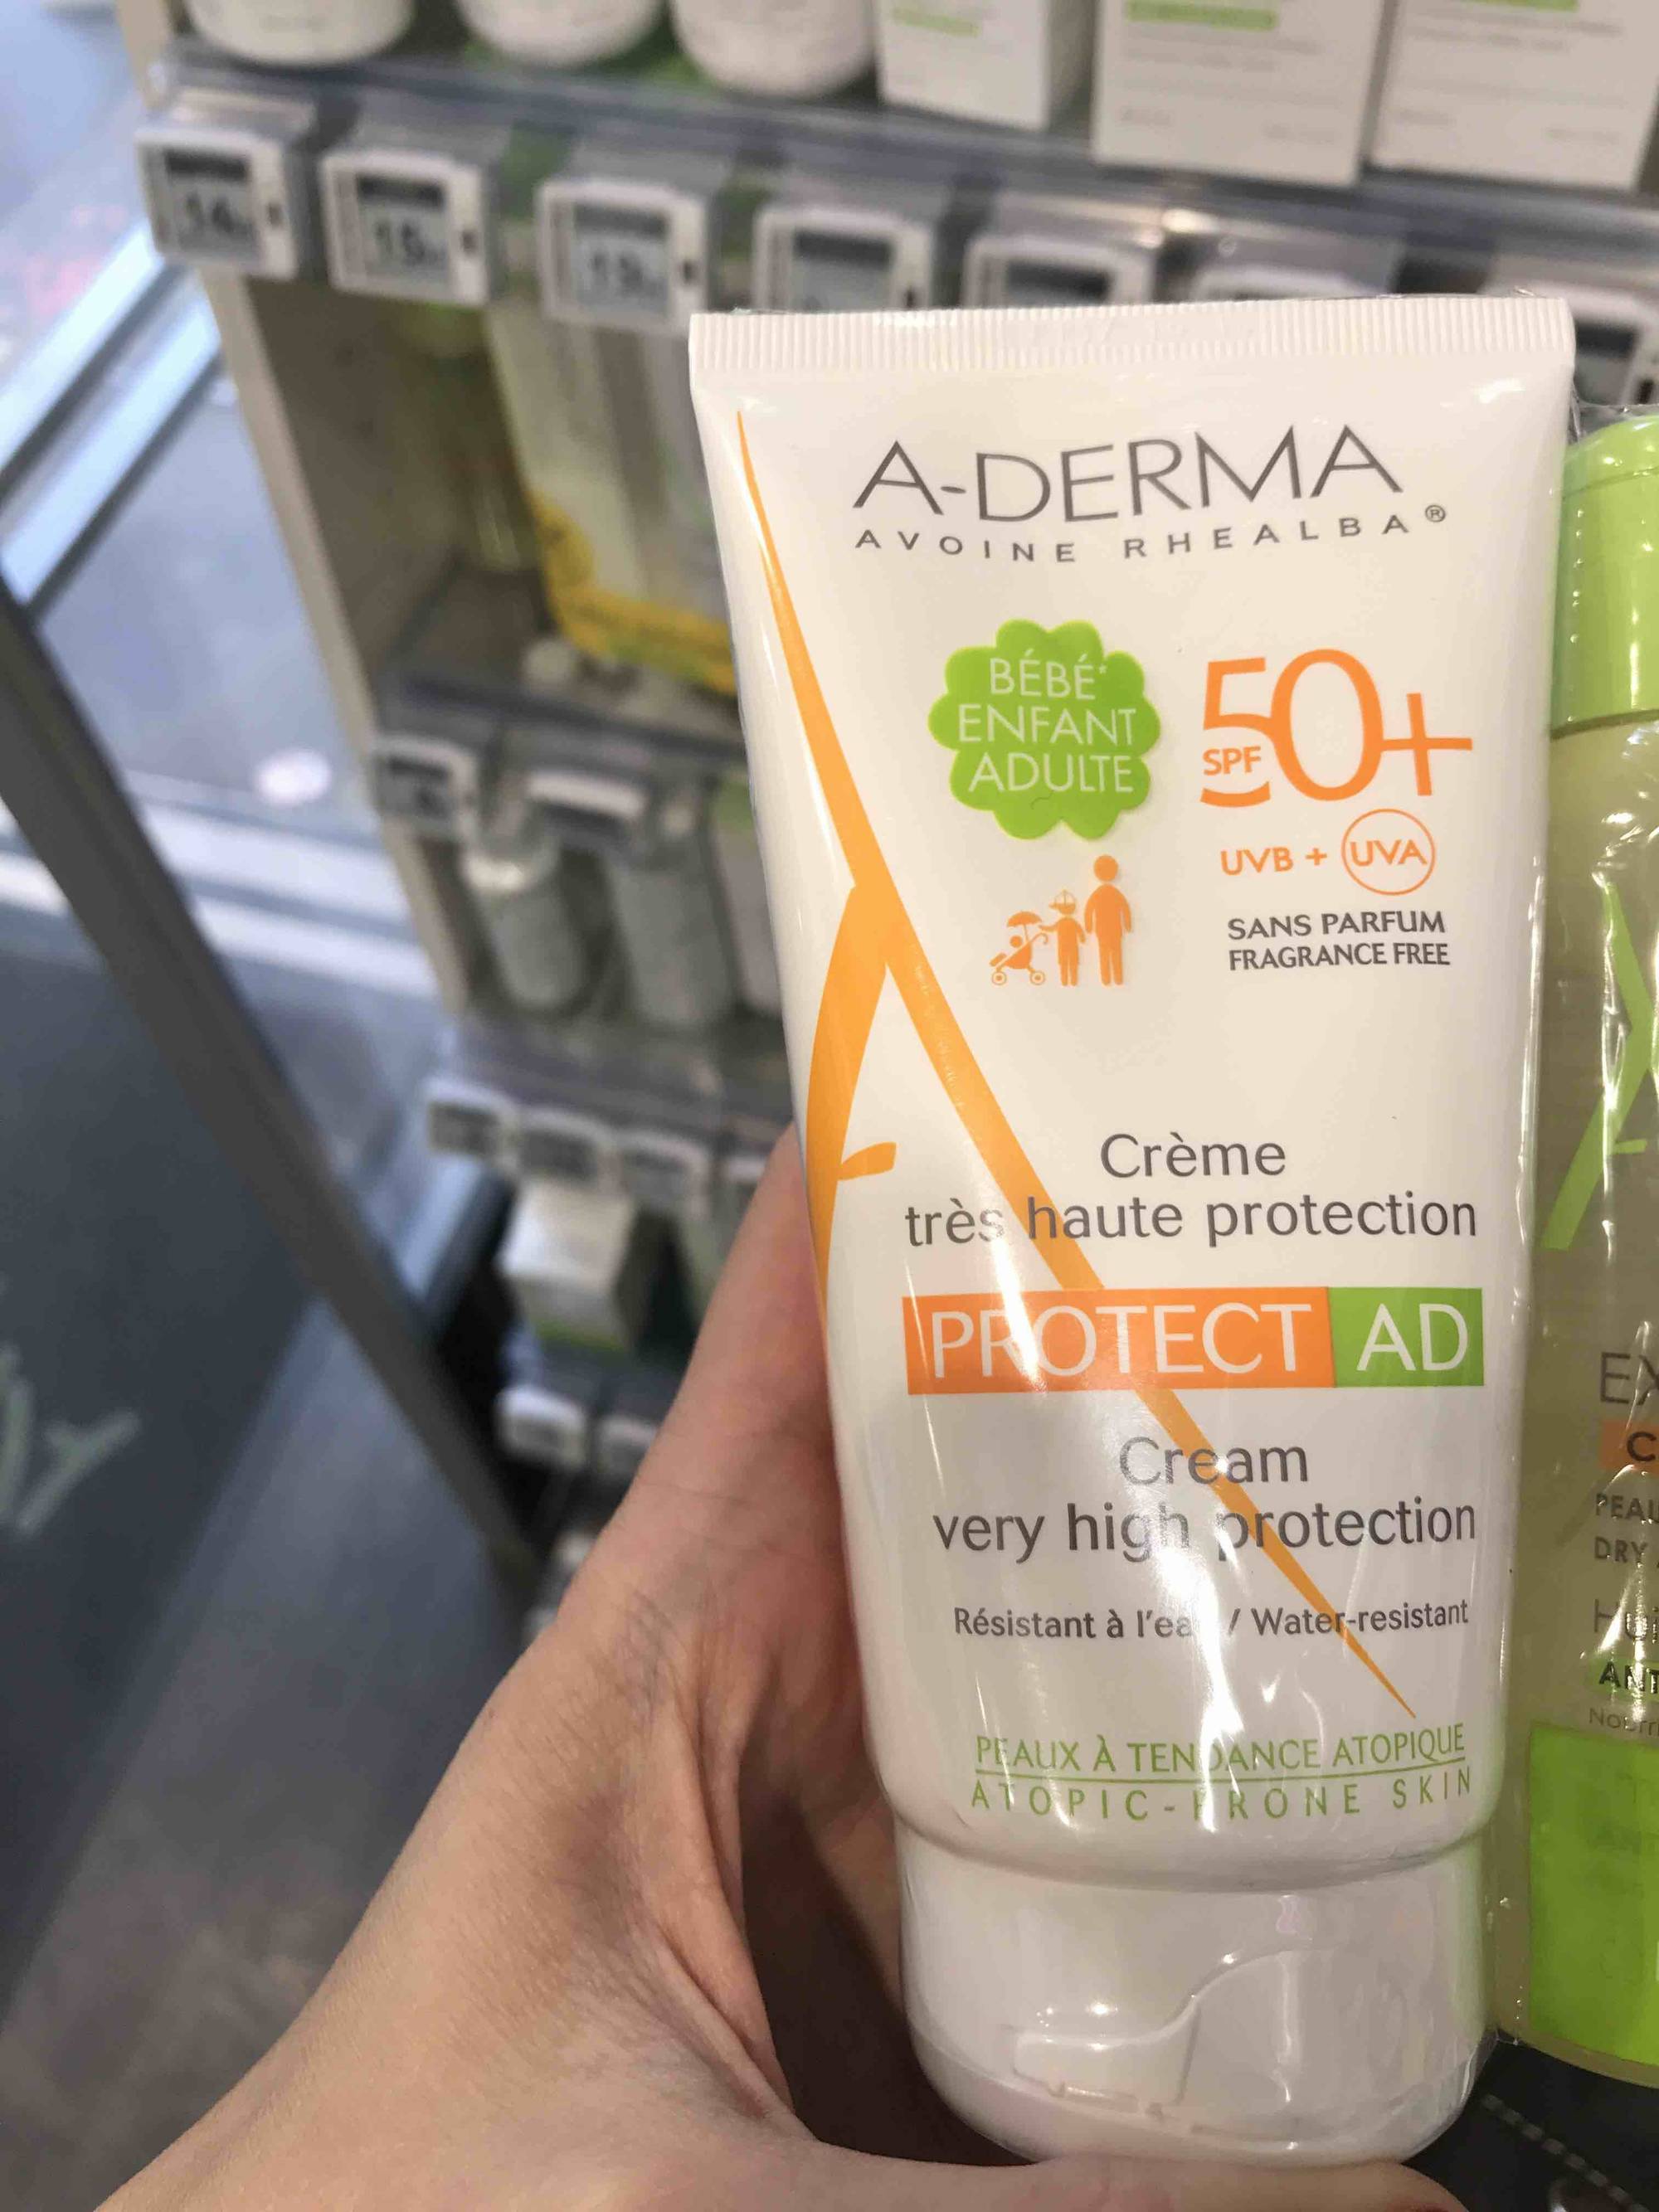 A-DERMA - Protect AD - Crème haute protection SPF 50+